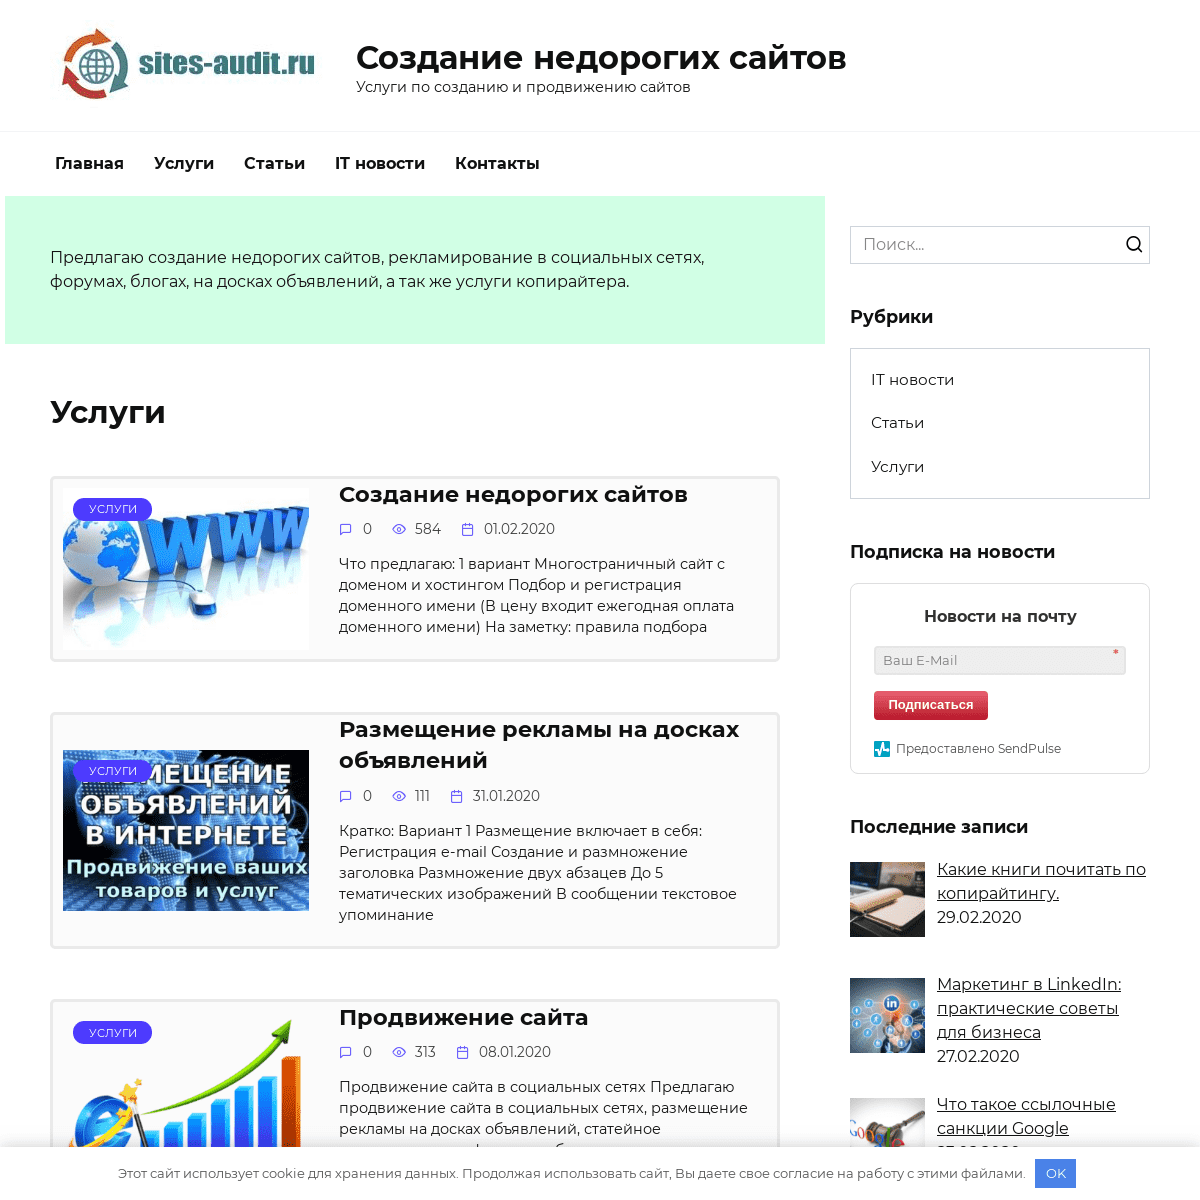 A complete backup of sites-audit.ru